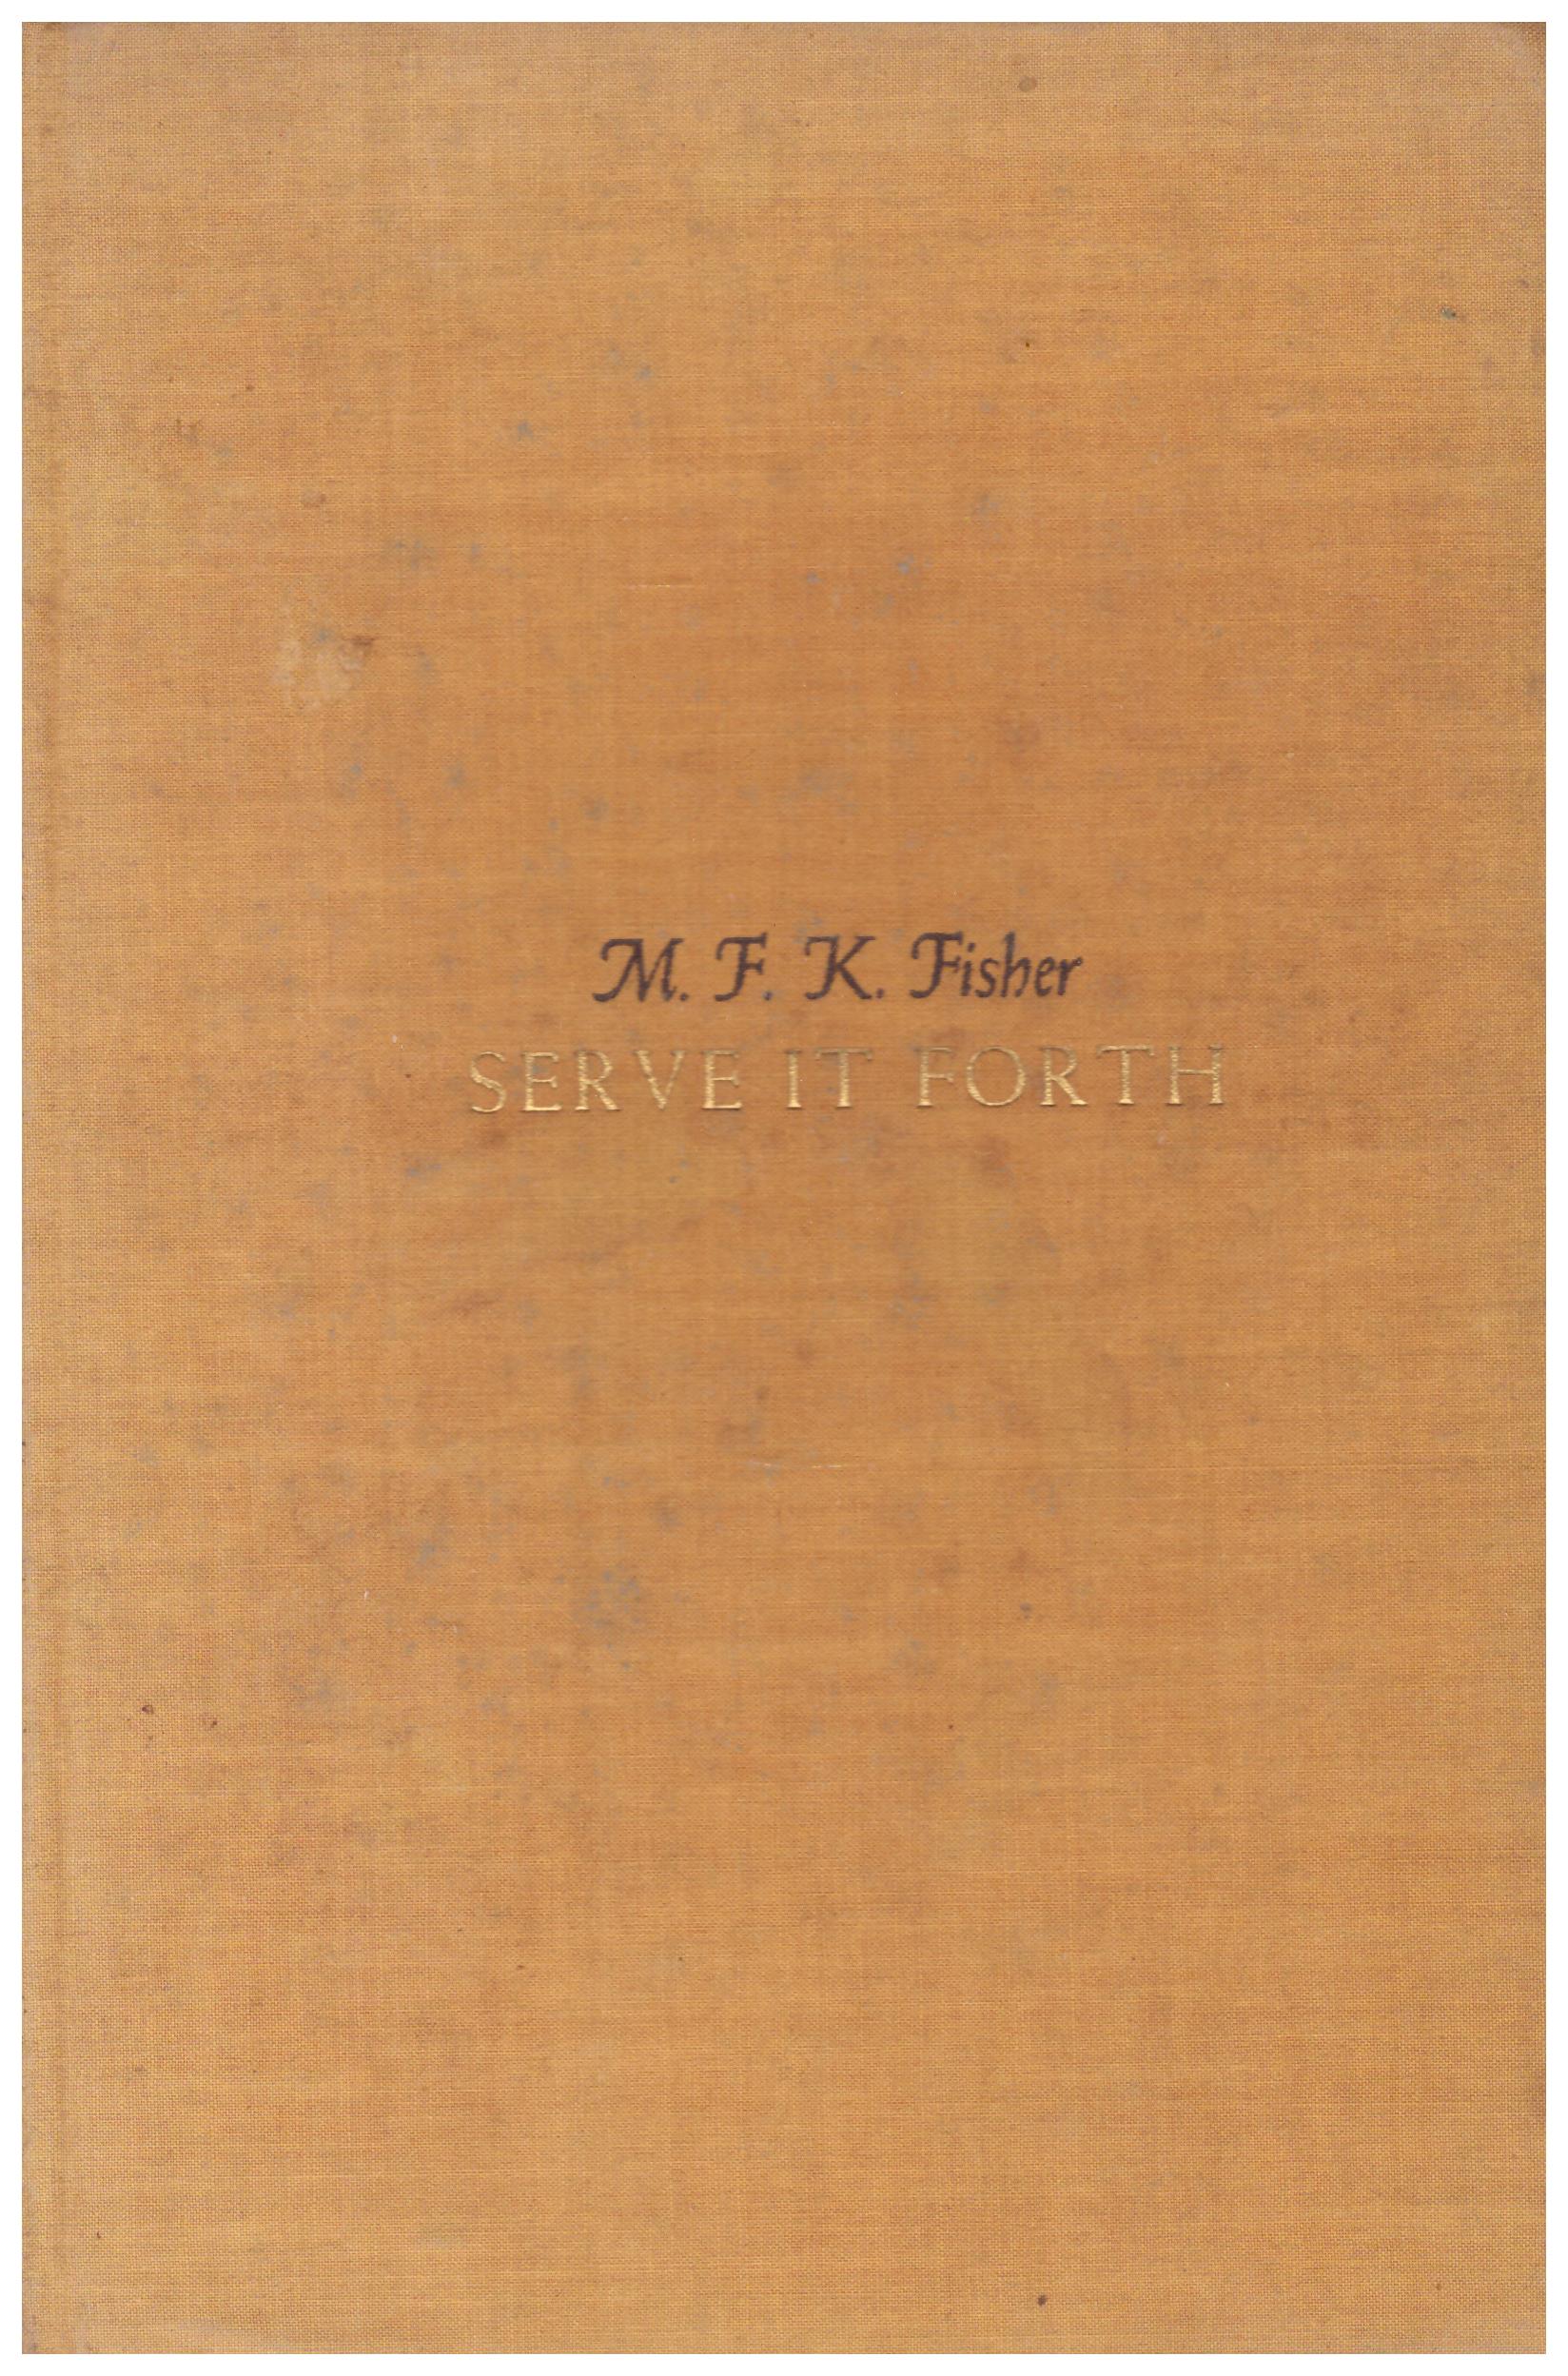 Titolo: Serve it forth Autore: M. F. K. Fisher Editore: harper 1937